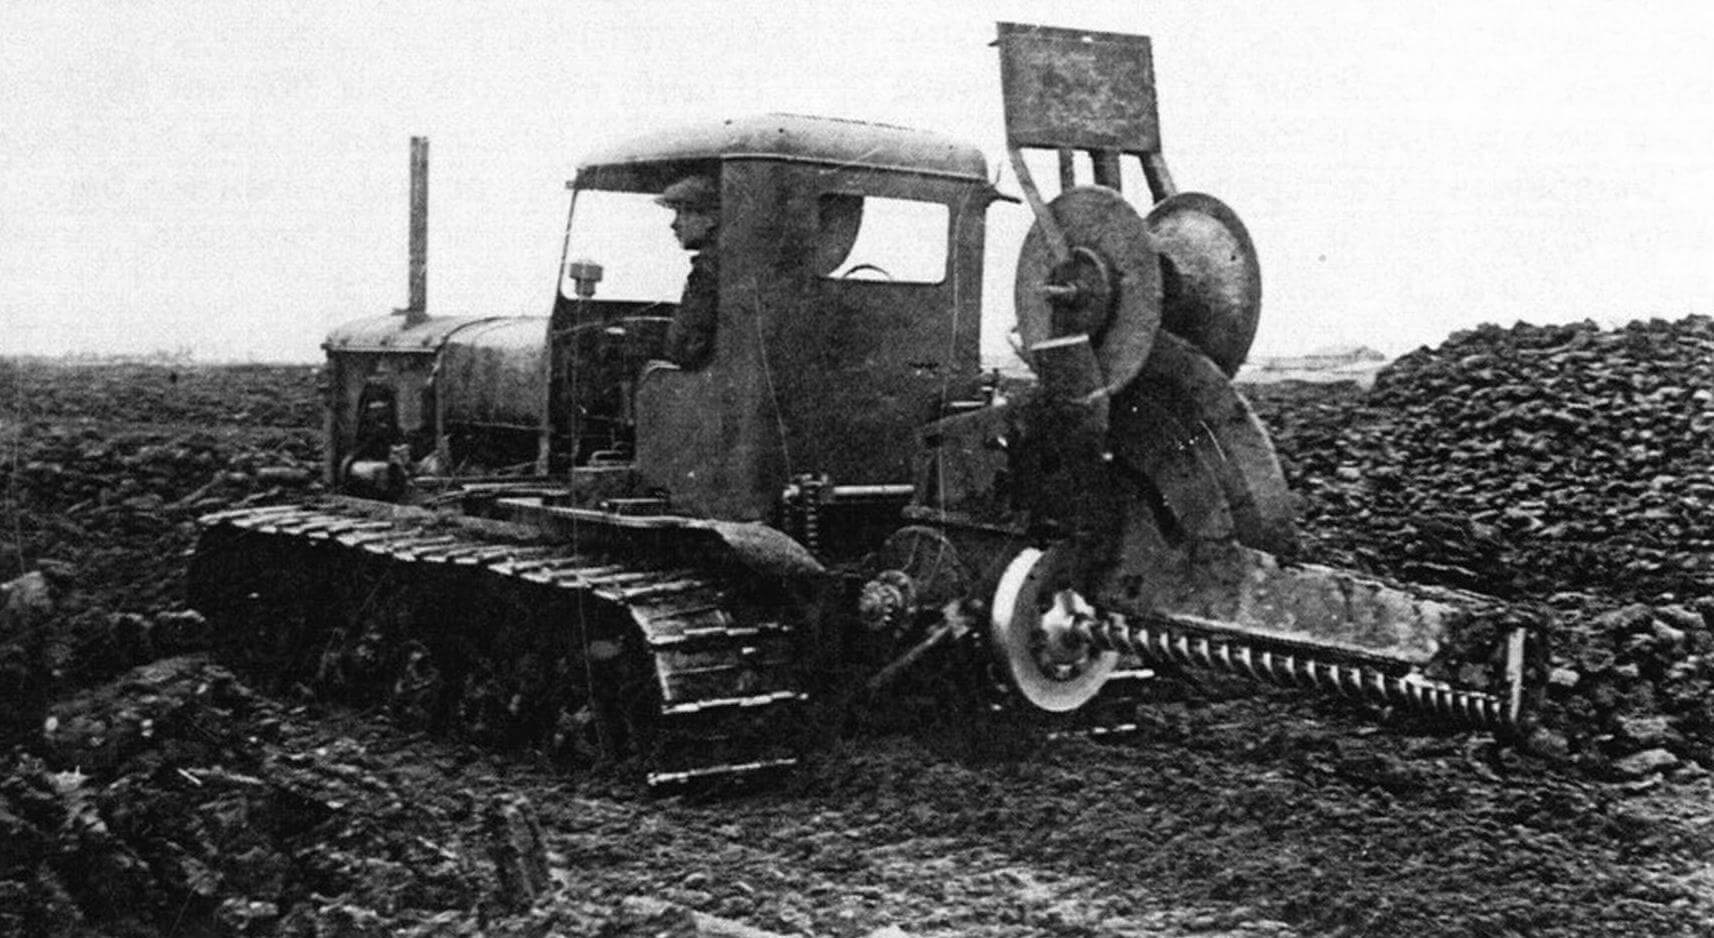 Тракторы СТЗ-8 использовались на различных работах, но основным их назначением были мелиорация и торфодобыча. На фото -СТЗ-8 с установленной на нем дренажновинтовой машиной